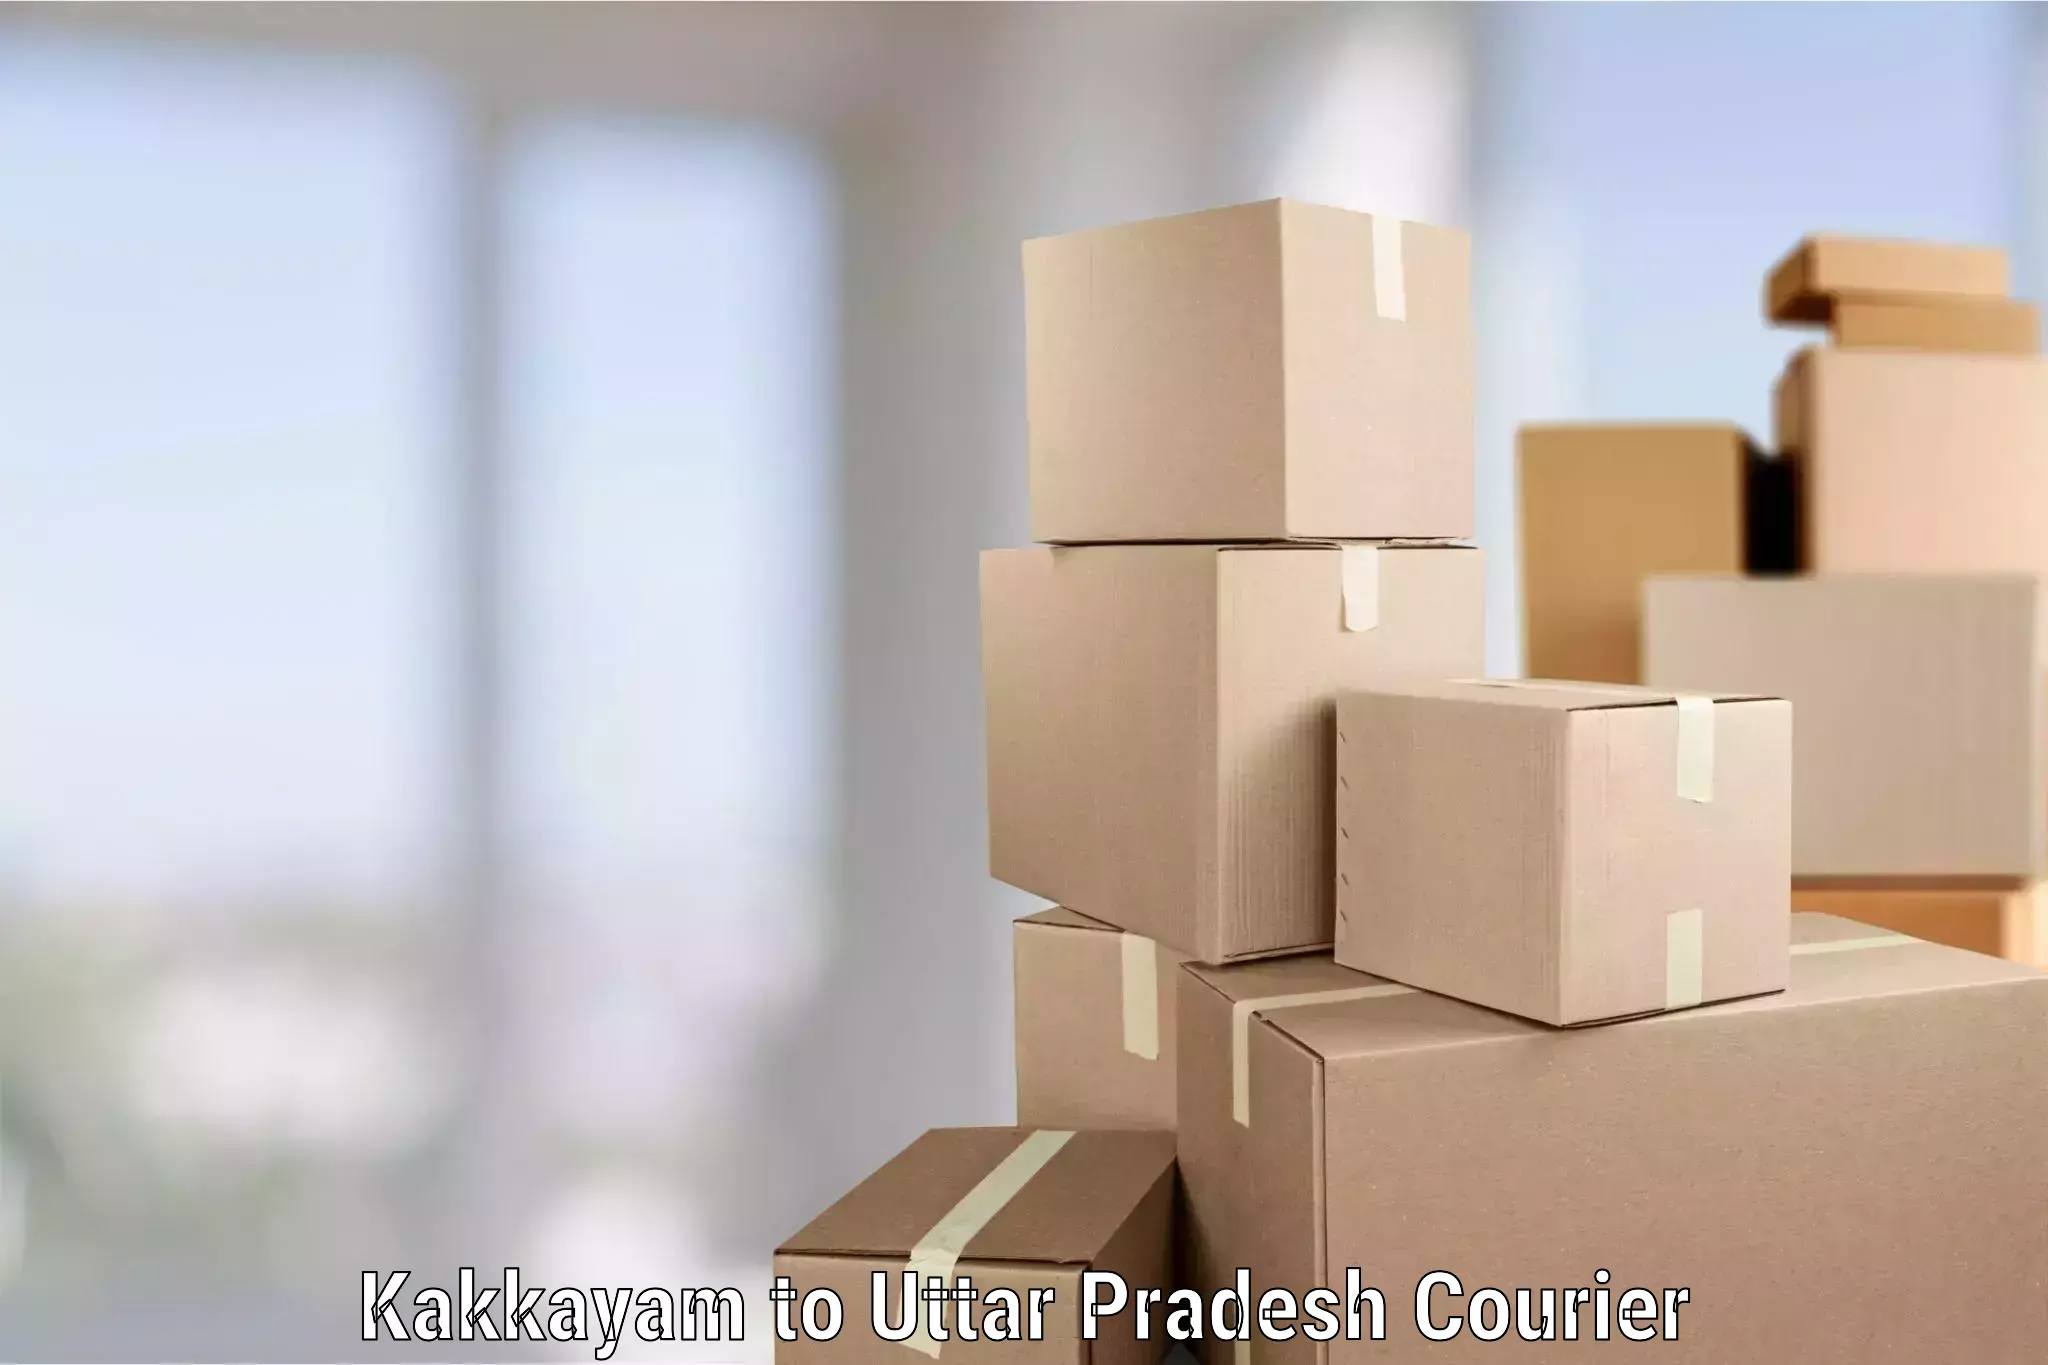 Furniture delivery service Kakkayam to Sant Ravidas Nagar